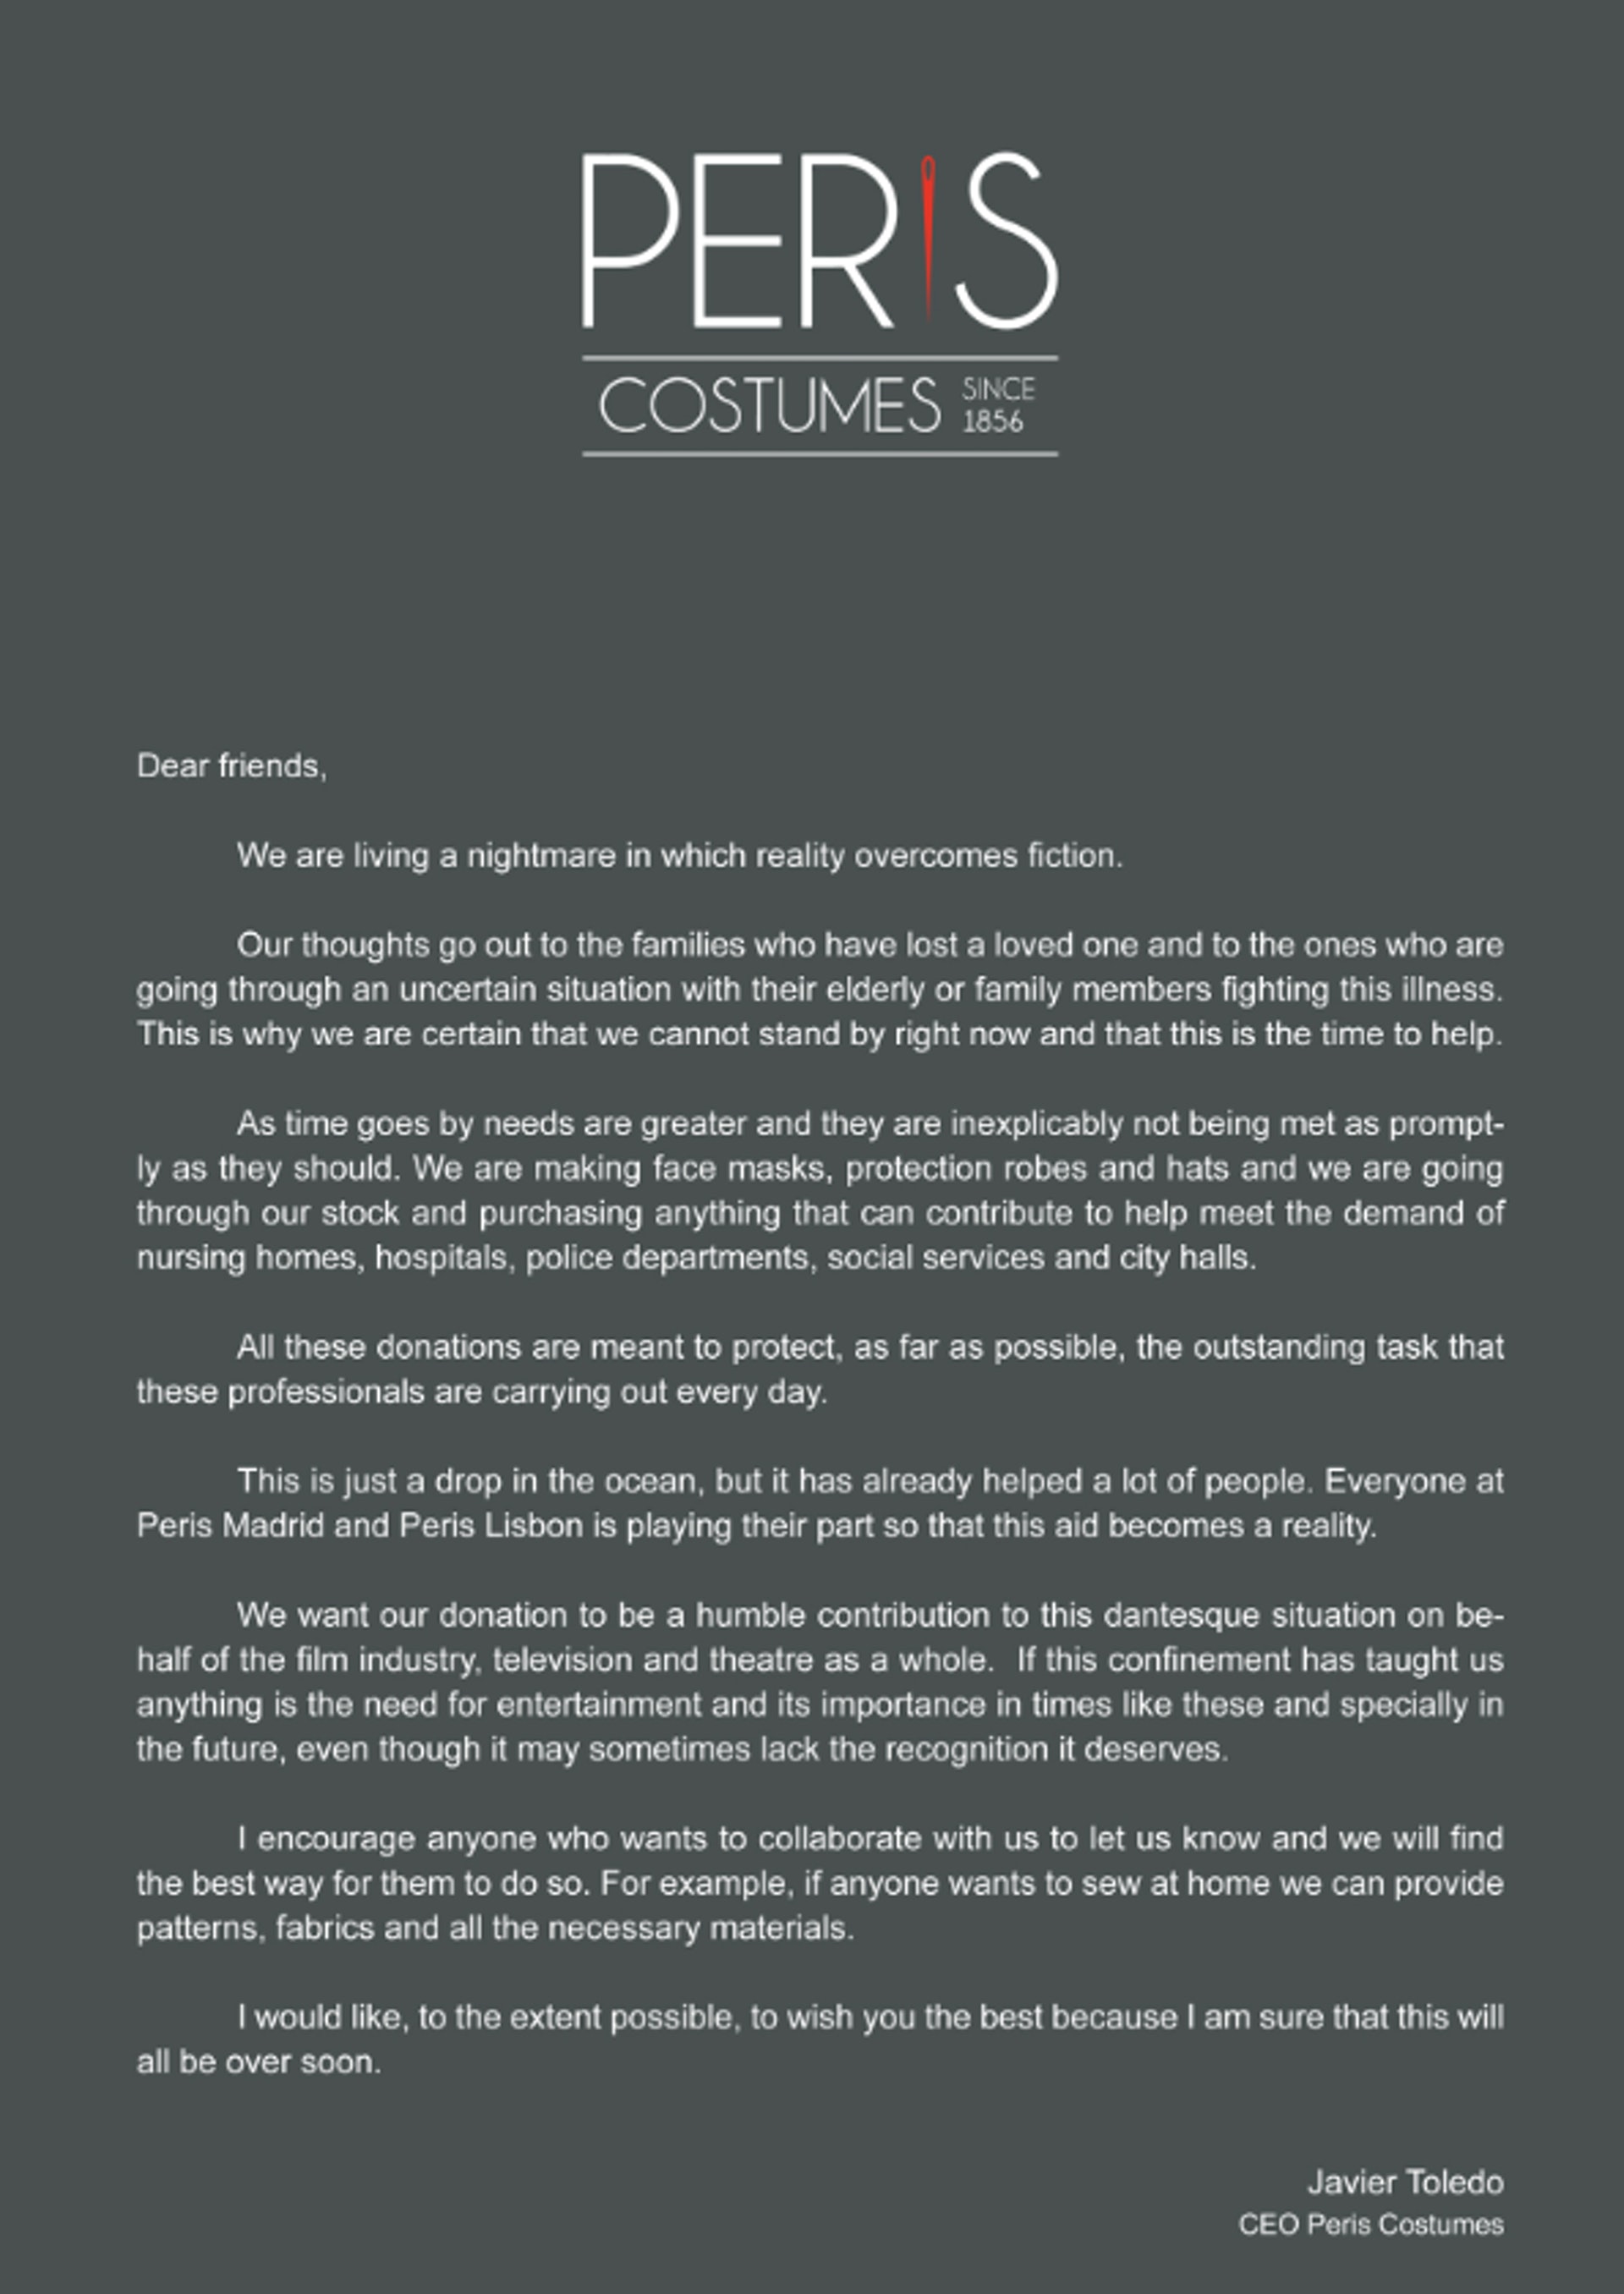 總部位於西班牙馬德里的服裝公司Peris Costumes，其行政總裁Javier Toldeo日前在官網發表公開信，宣布公司於馬德里以及葡萄牙首都里斯本的工場，會臨時改為製作口罩、防護長袍及頭罩等。（periscostumes.com）